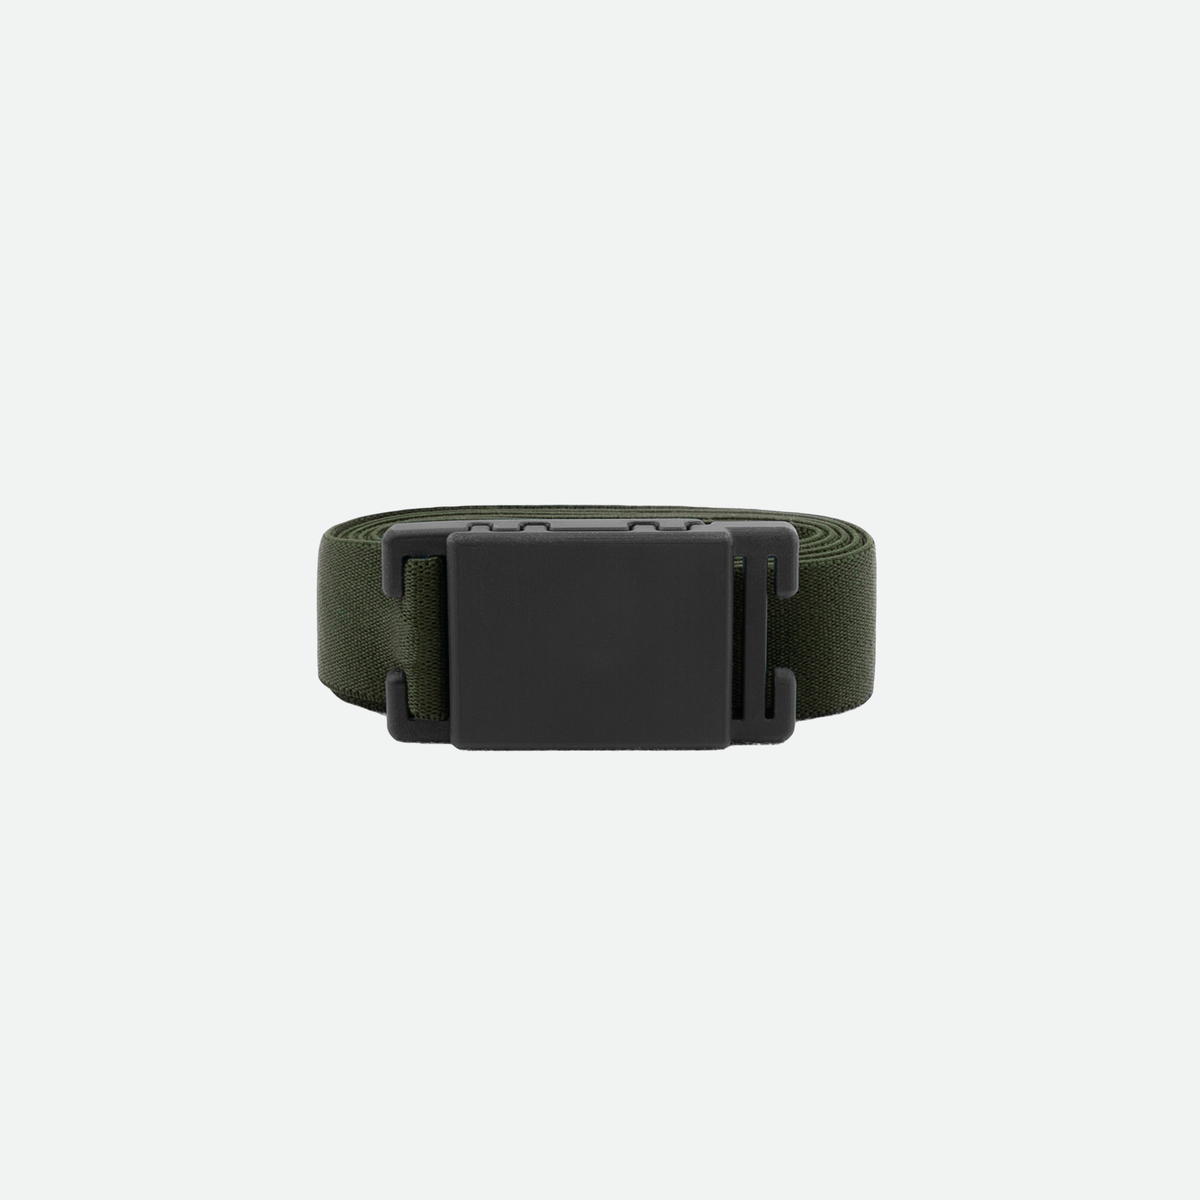 xFlex belt 2.0 – belt revolution – Urban Gear Pro